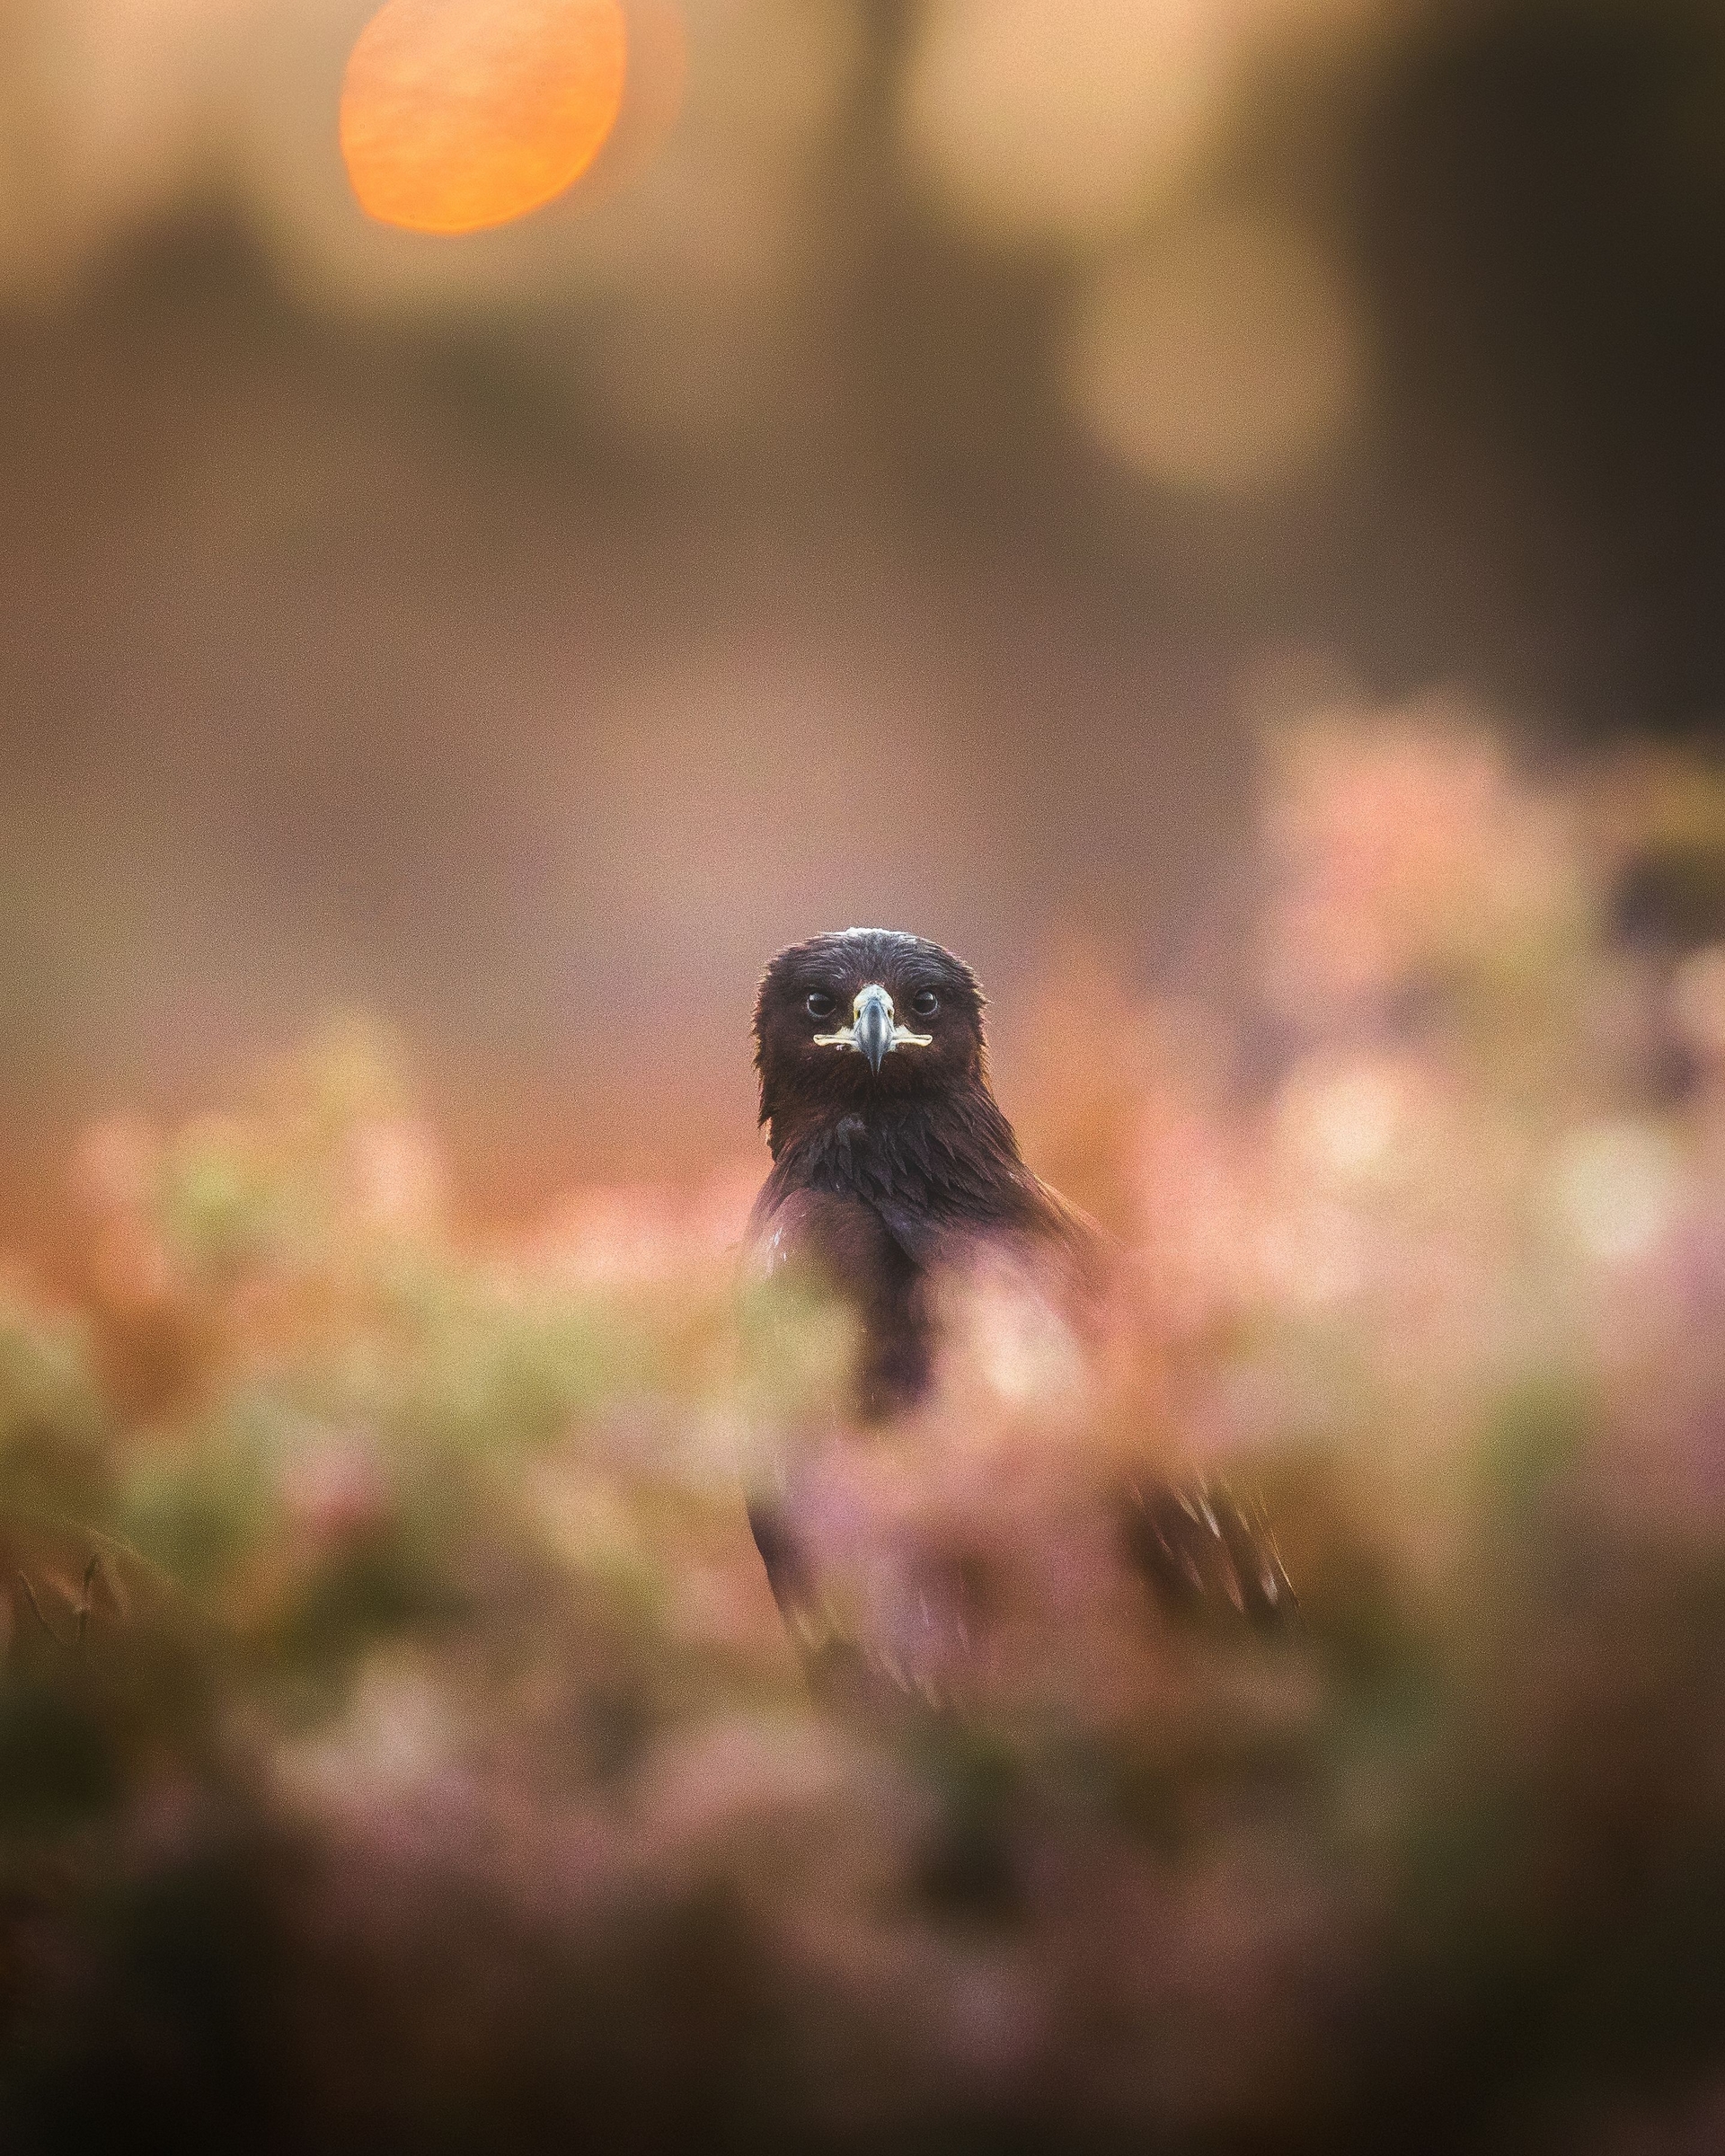 當我在攝影時，一隻老鷹從斑斕的色彩間望向我。於是我轉換主題，拍下了一些很棒的老鷹照片，這是其中一張。